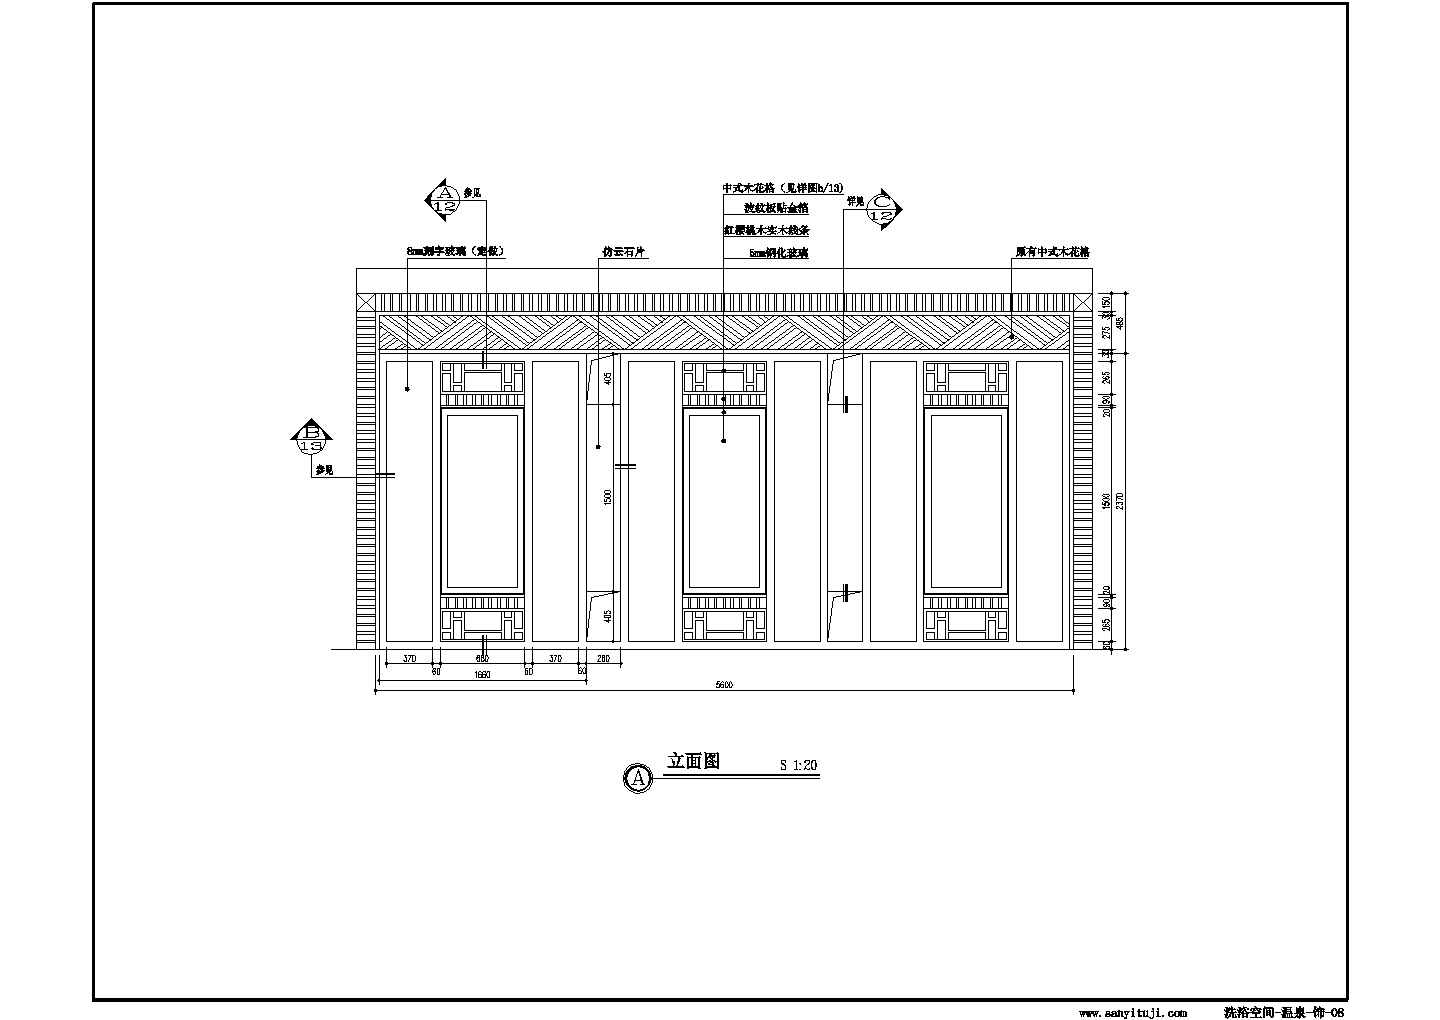 北京某精致龙泉洗浴中心全套装修施工设计cad图纸(含材料表)